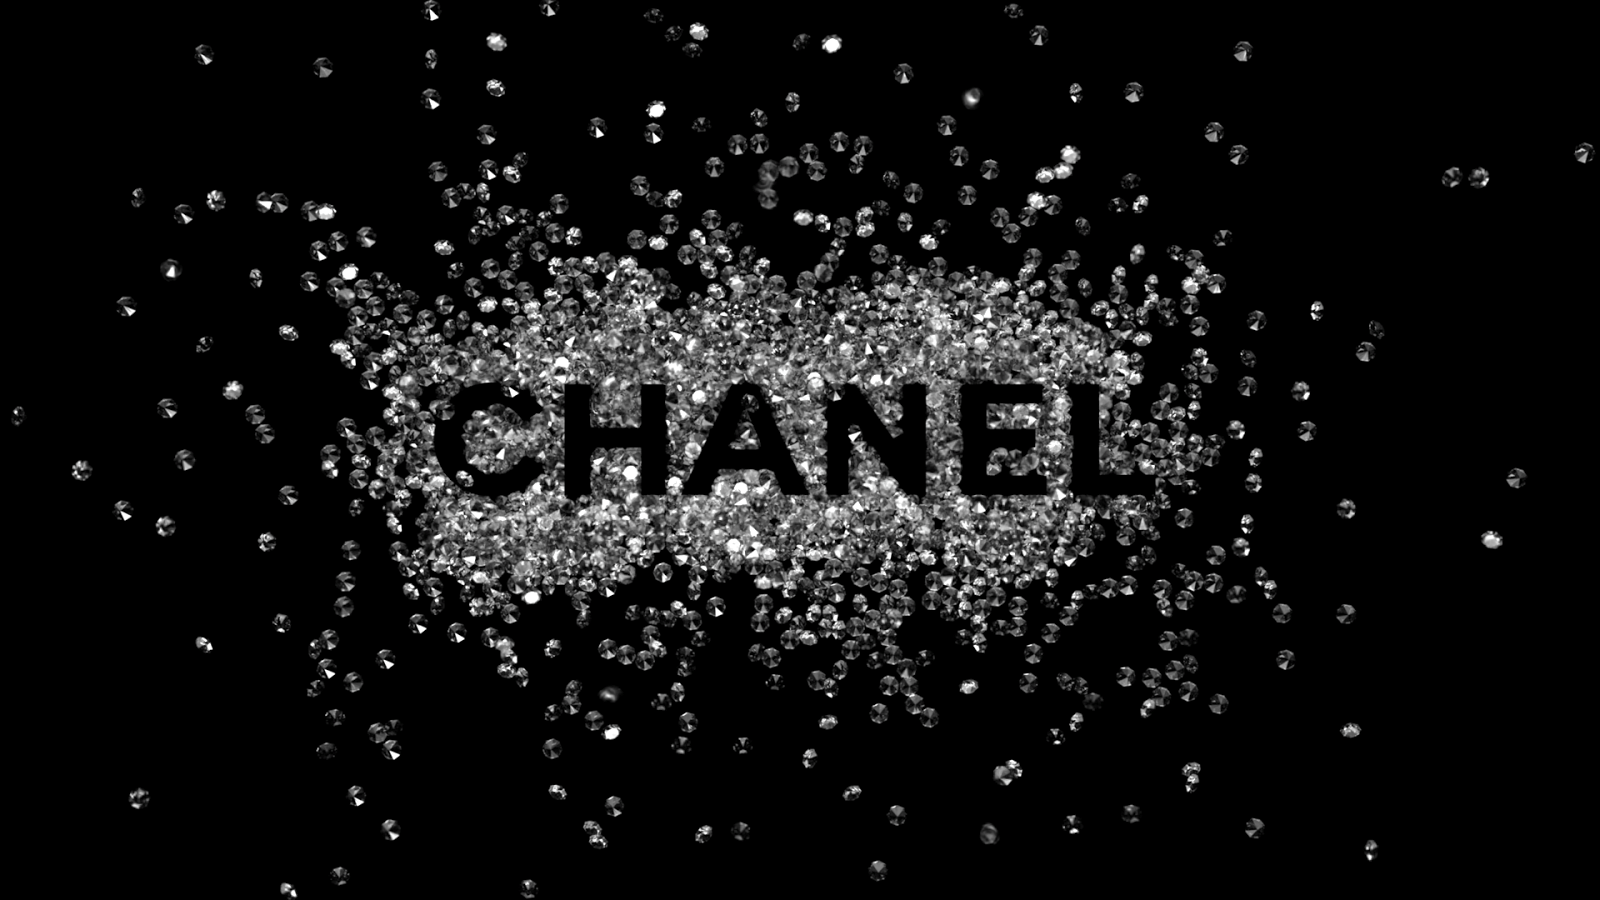 Wallpaper For > Chanel Logo Wallpaper